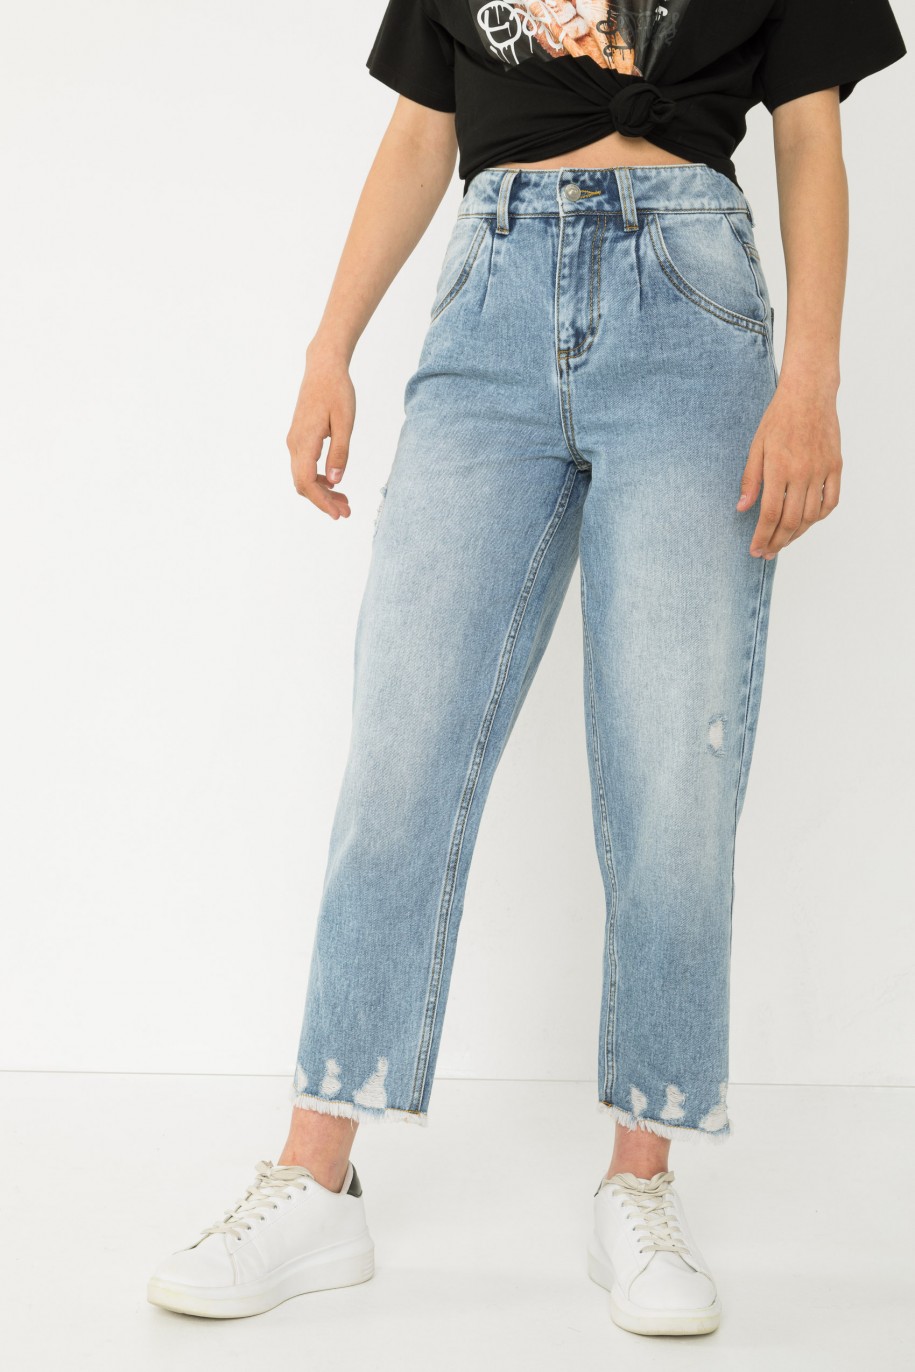 Niebieskie jeansy typu SLOUCHY - 43515